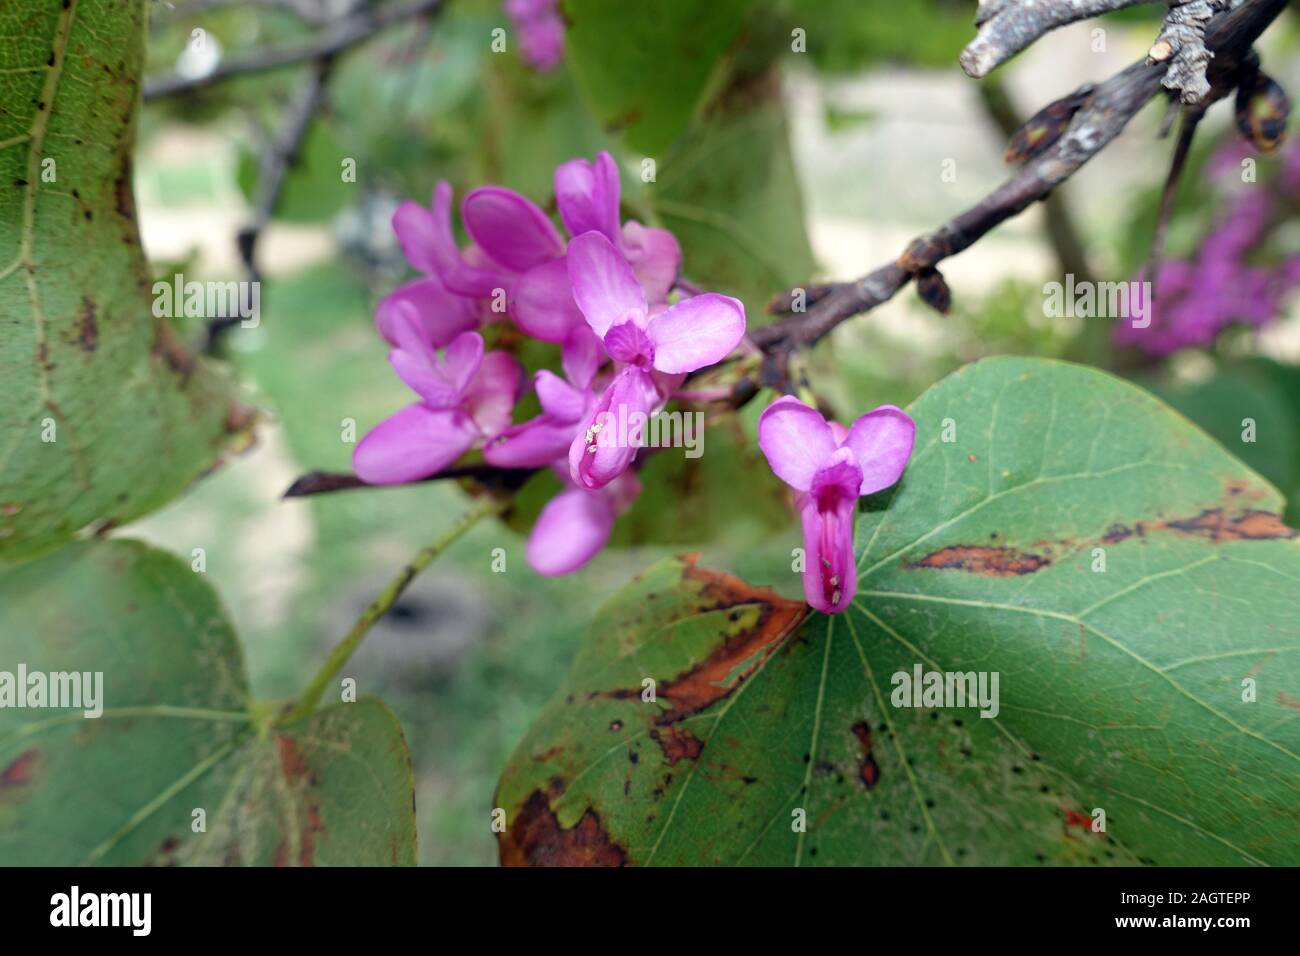 Gewöhnliche Judasbaum (Cercis siliquastrum) - Baum mit violetten Blüten, Famagusta, Türkische Republik Nordzypern Stock Photo